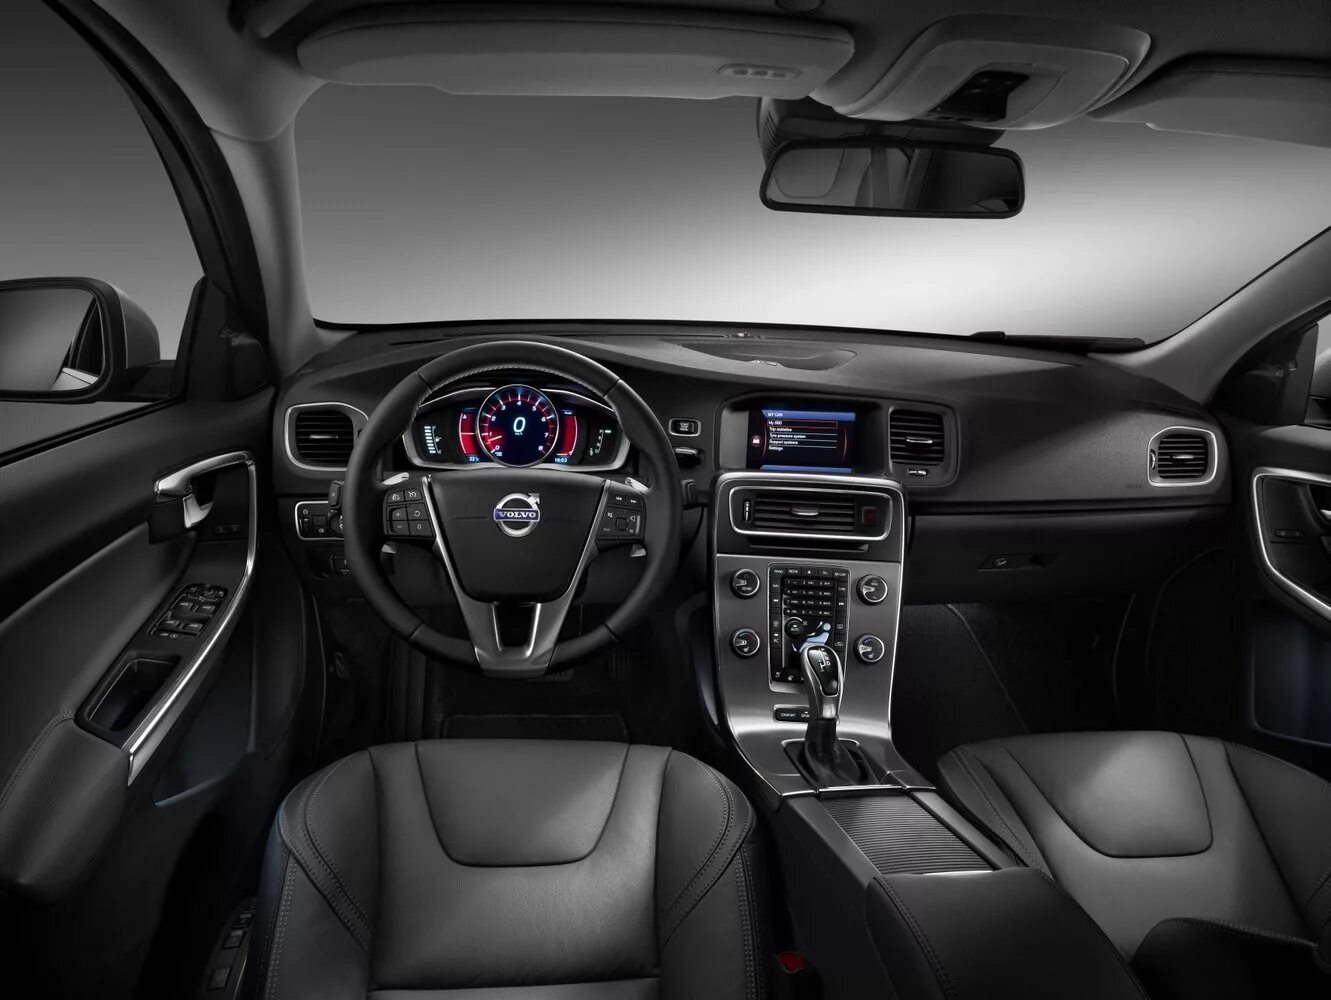 Volvo s60 1.6. Volvo s60 Interior. Volvo s60 II 2013. Volvo s60 2013 салон. Volvo s60 2014 салон.